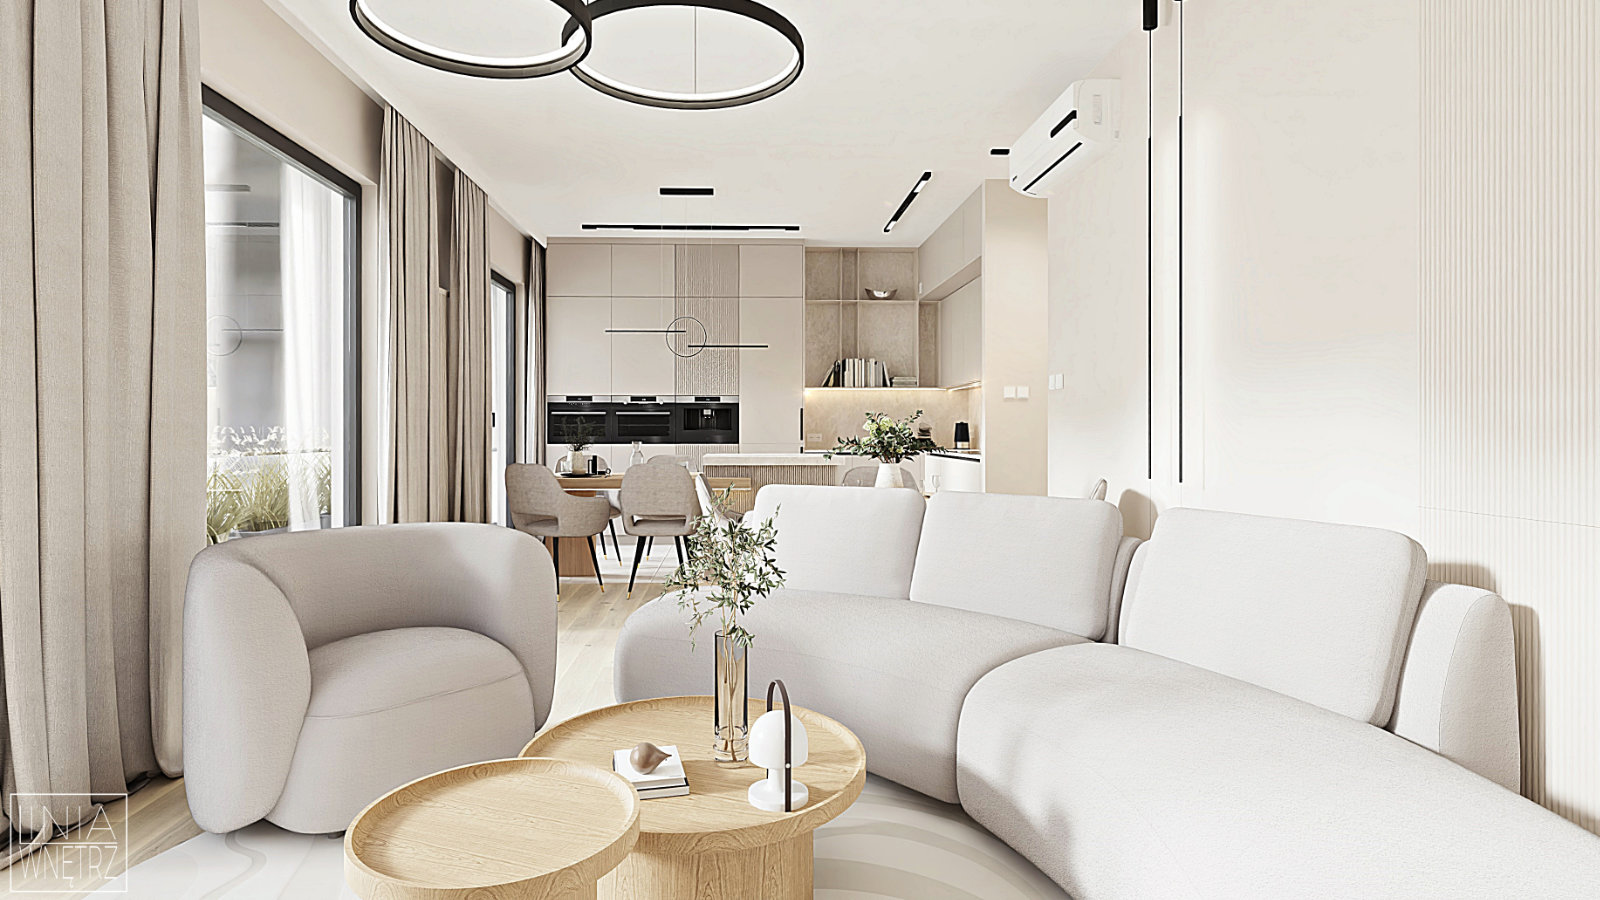 salon-elegancki-nowoczesny-minimalistyczny-jasne-sciany-drewno-biel-obly-fotel-sofa-kuchnia-otwarta-projekt-linia-wnetrz